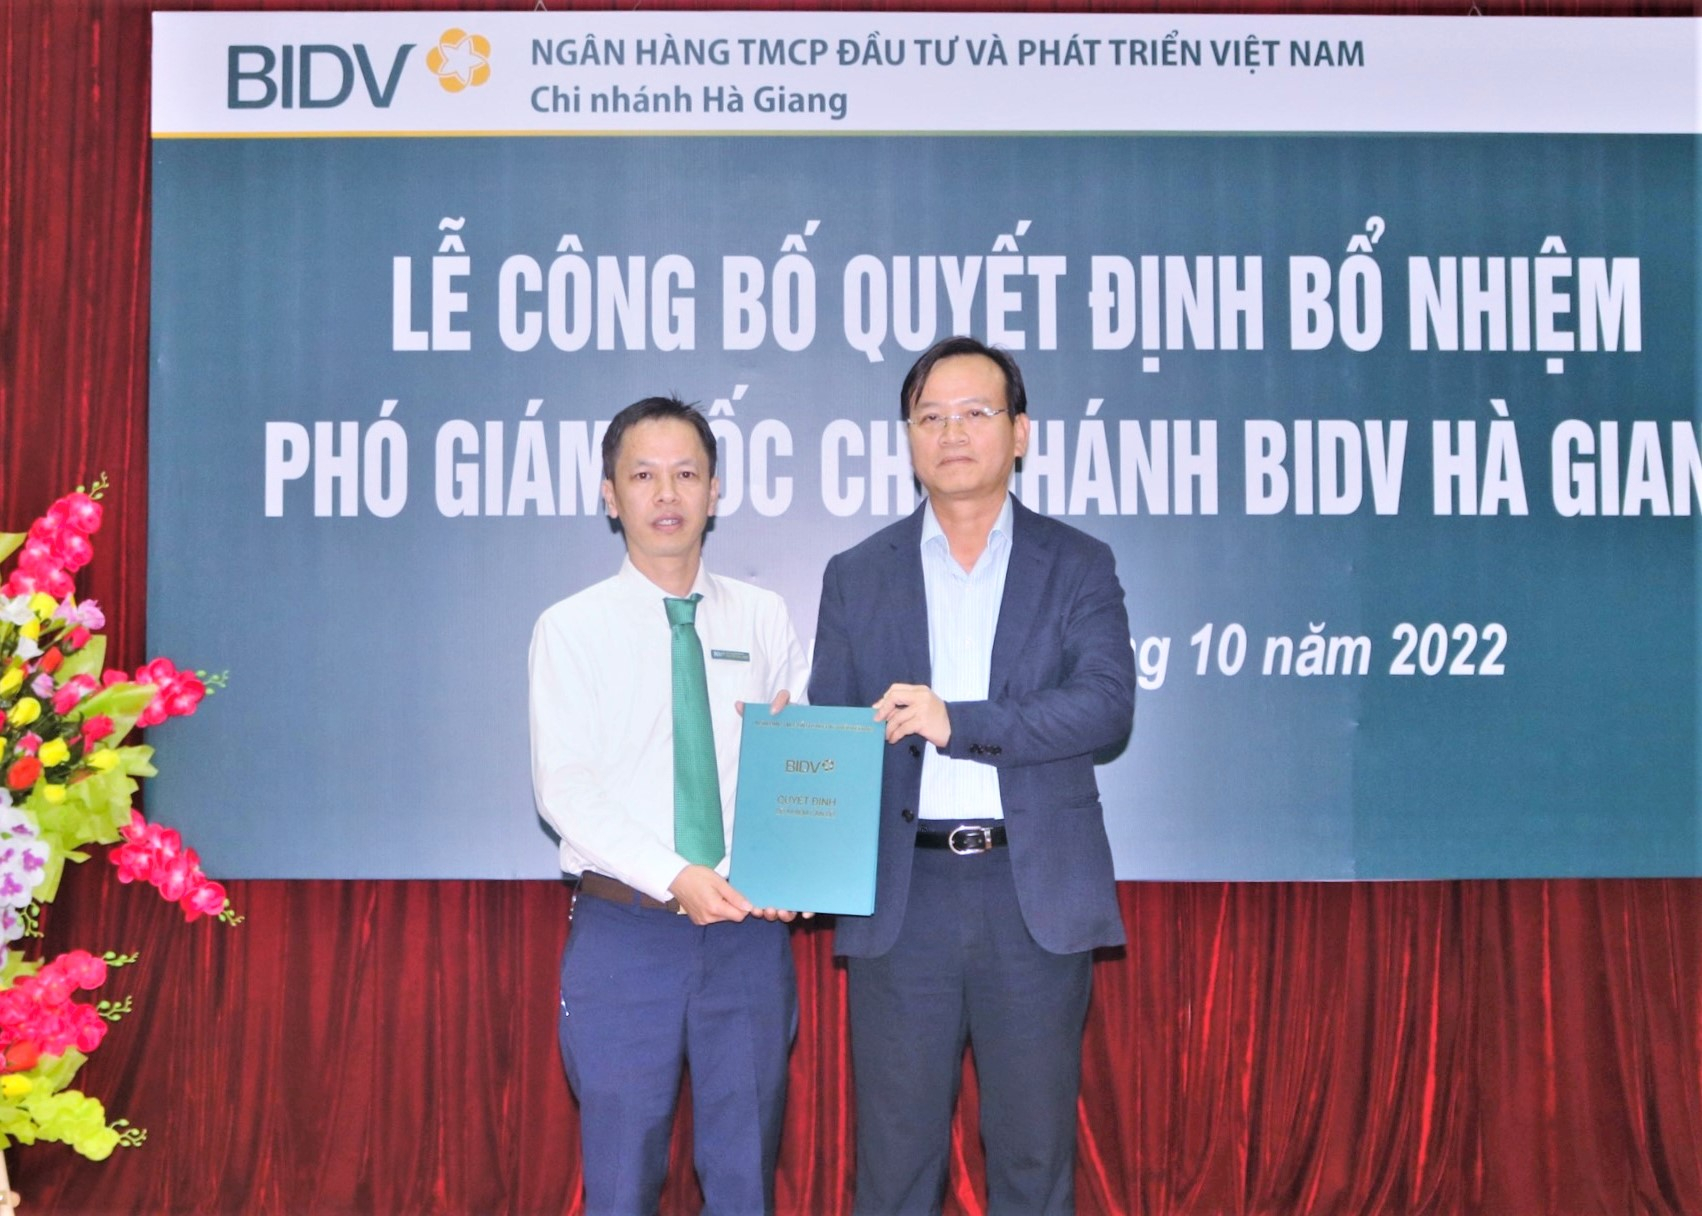 Đồng chí Phan Thanh Hải, Phó Tổng giám đốc BIDV trao Quyết định bổ nhiệm đồng chí Nguyễn Đắc Minh giữ chức Phó giám đốc Ngân hàng BIDV Chi nhánh tỉnh Hà Giang